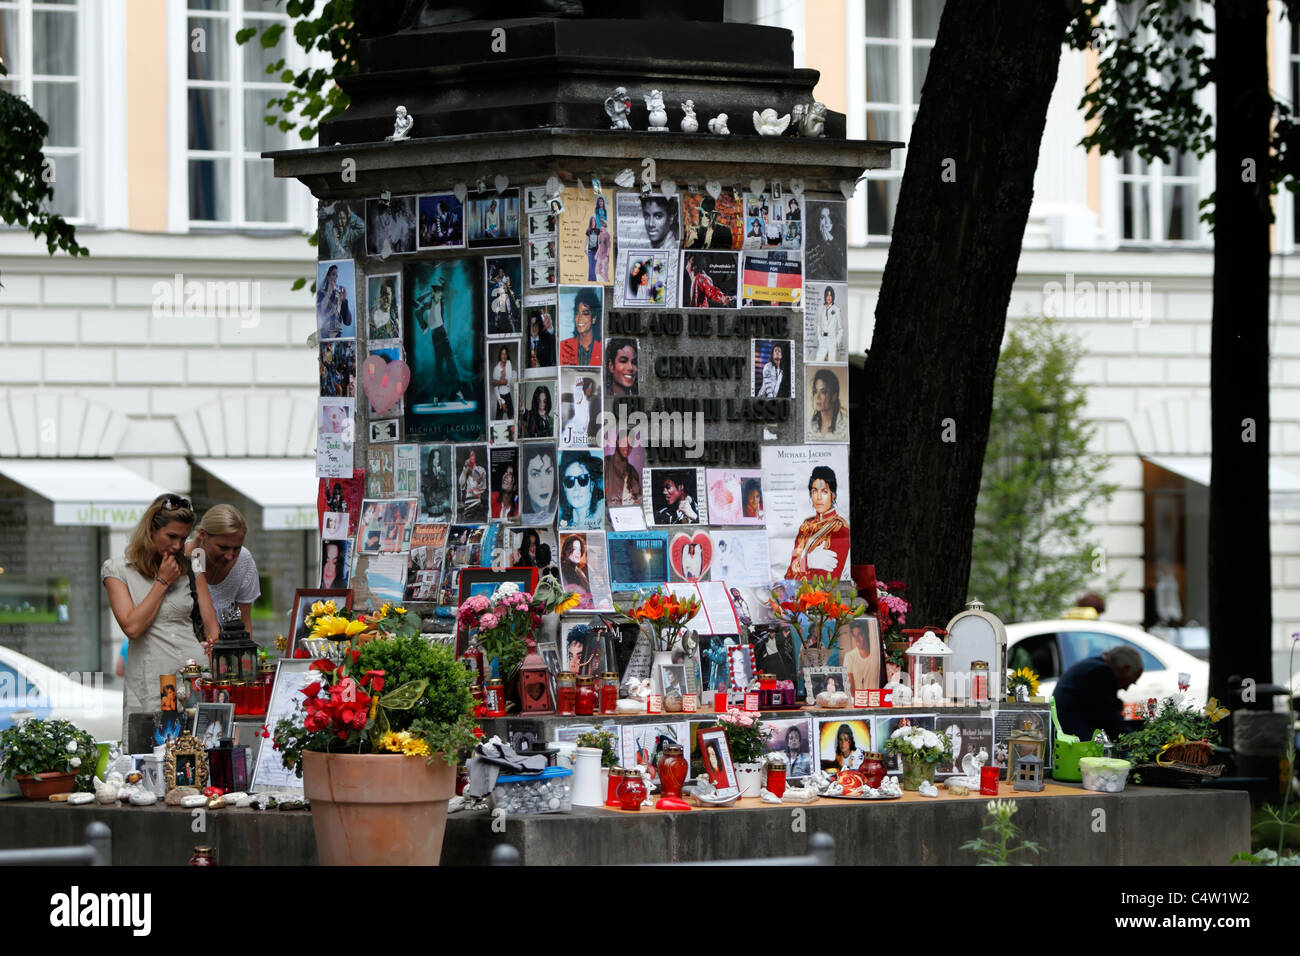 Santuario de Michael Jackson en la base del Orlando Di Lasso memorial fuera del Hotel Bayerischer Hof, Munich de Alta Baviera. Foto de stock